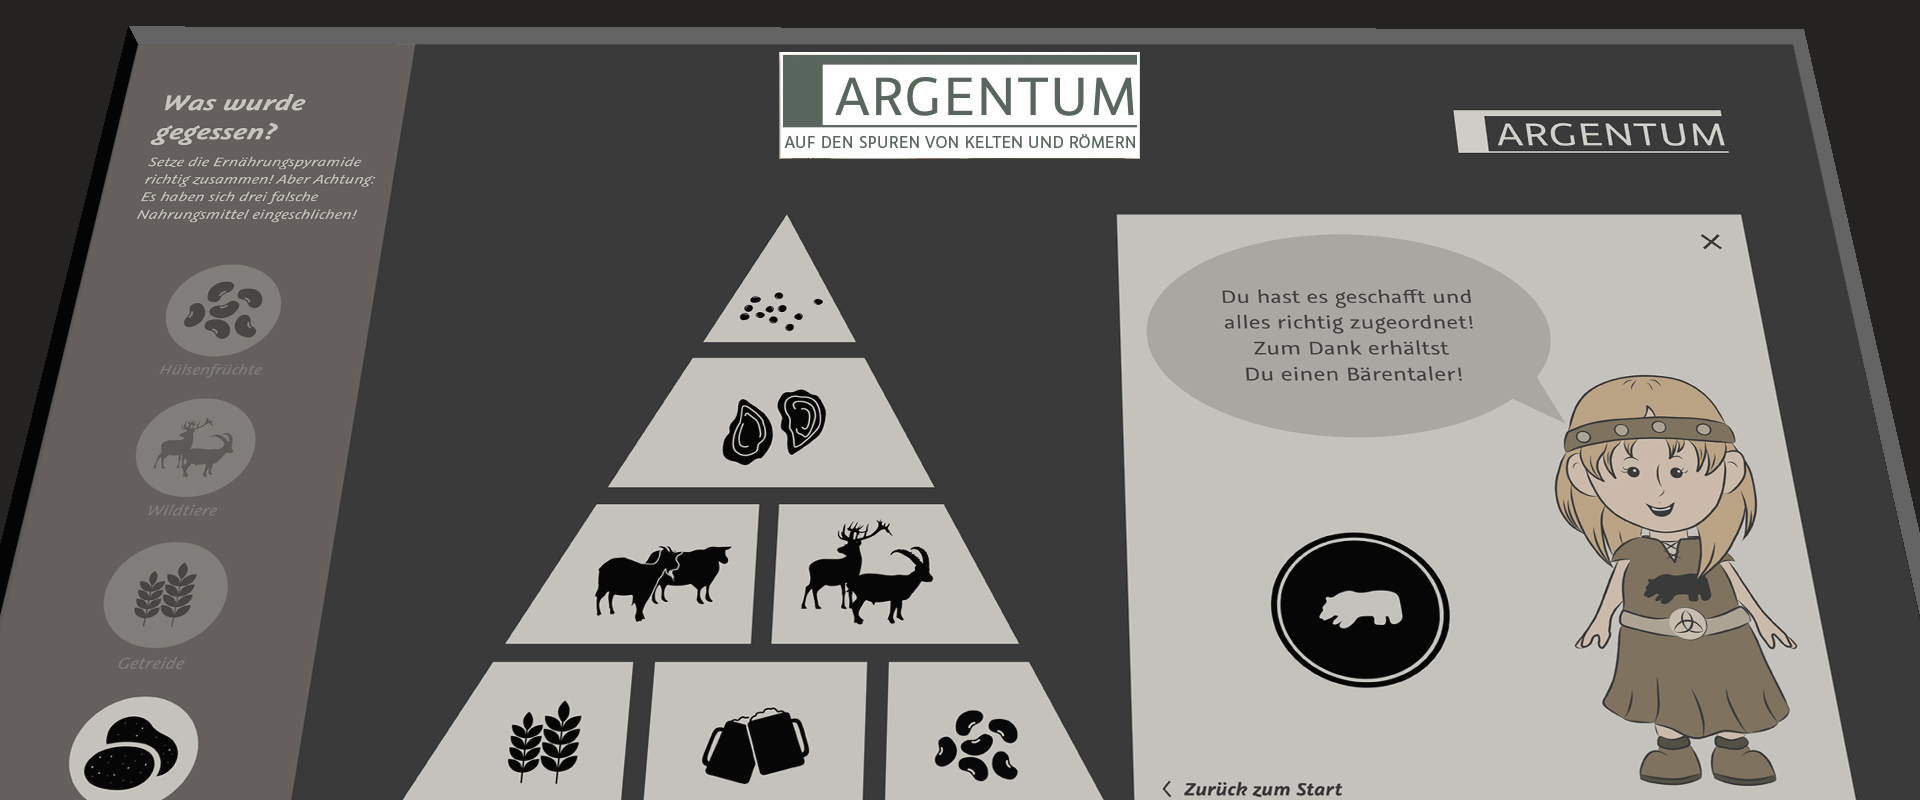 Dargestellt ist die Ansicht eines multimedial umgesetzten Quiz zum Thema Ernährung der Kelten und Römer.